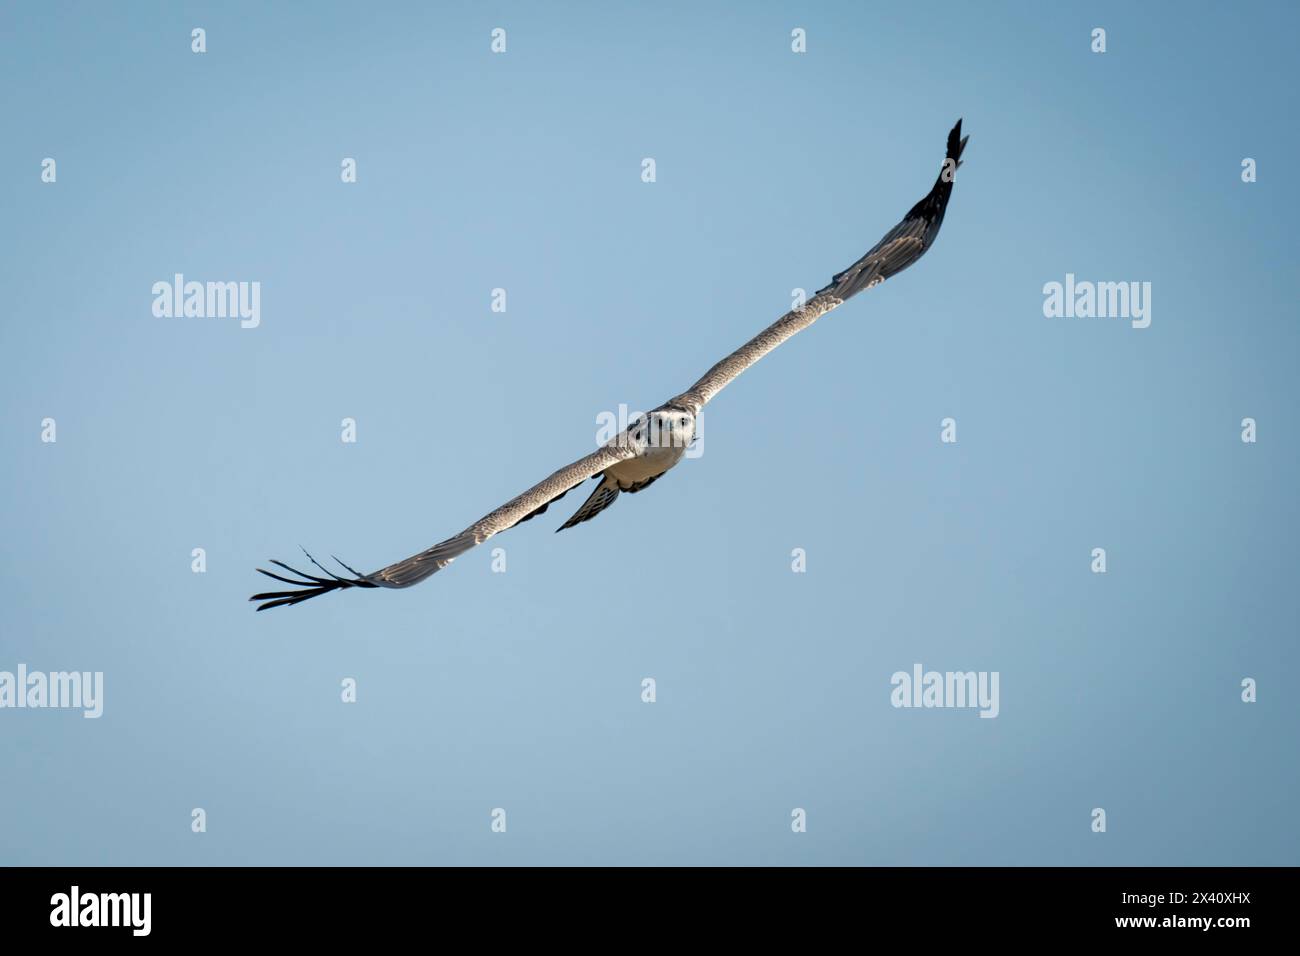 Juvenile martial eagle glides through blue sky Stock Photo